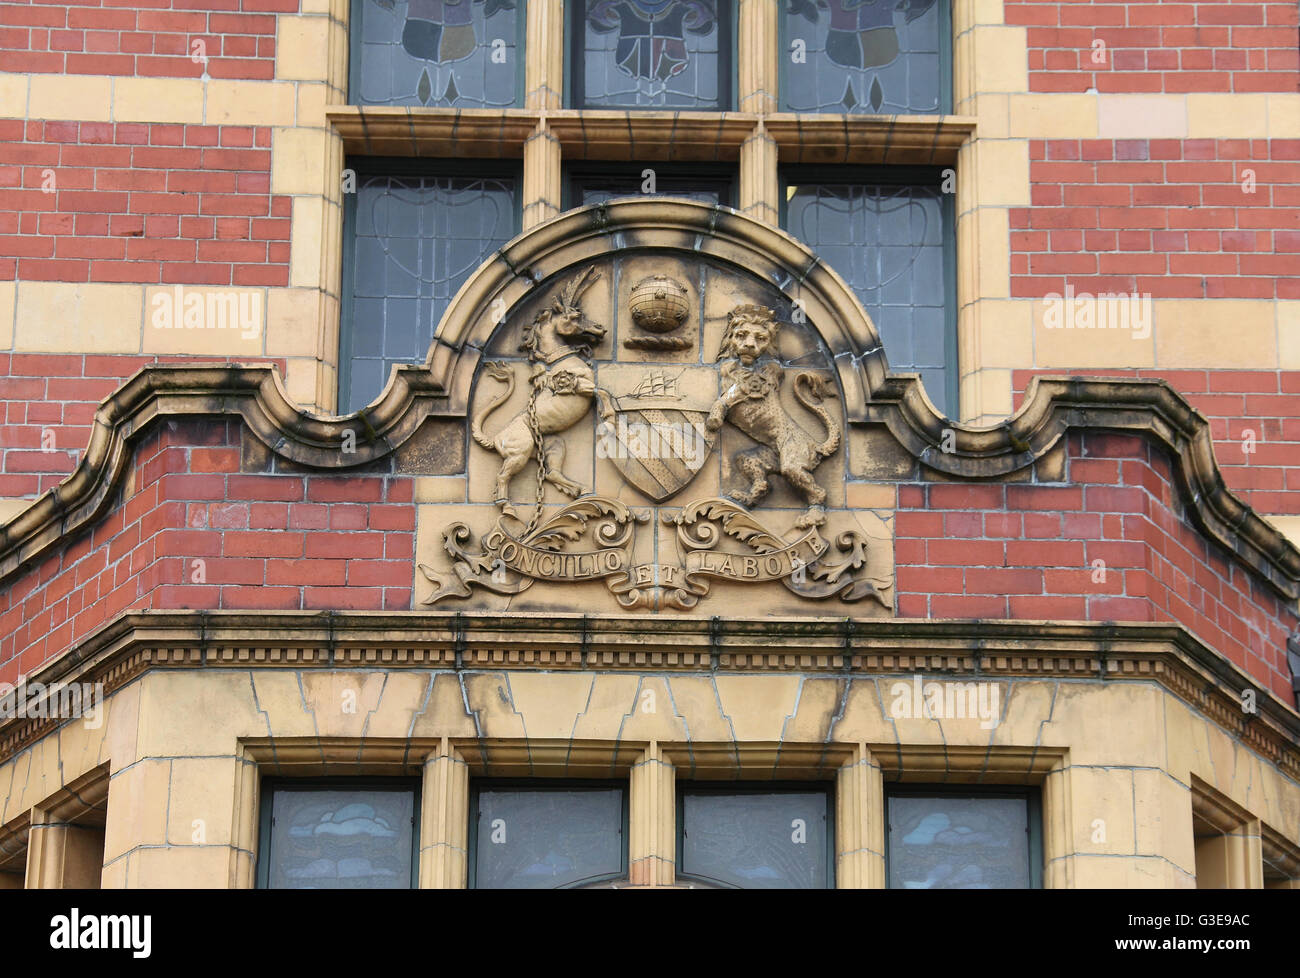 Manchester en la fachada el escudo de armas de Victoria Baños Foto de stock